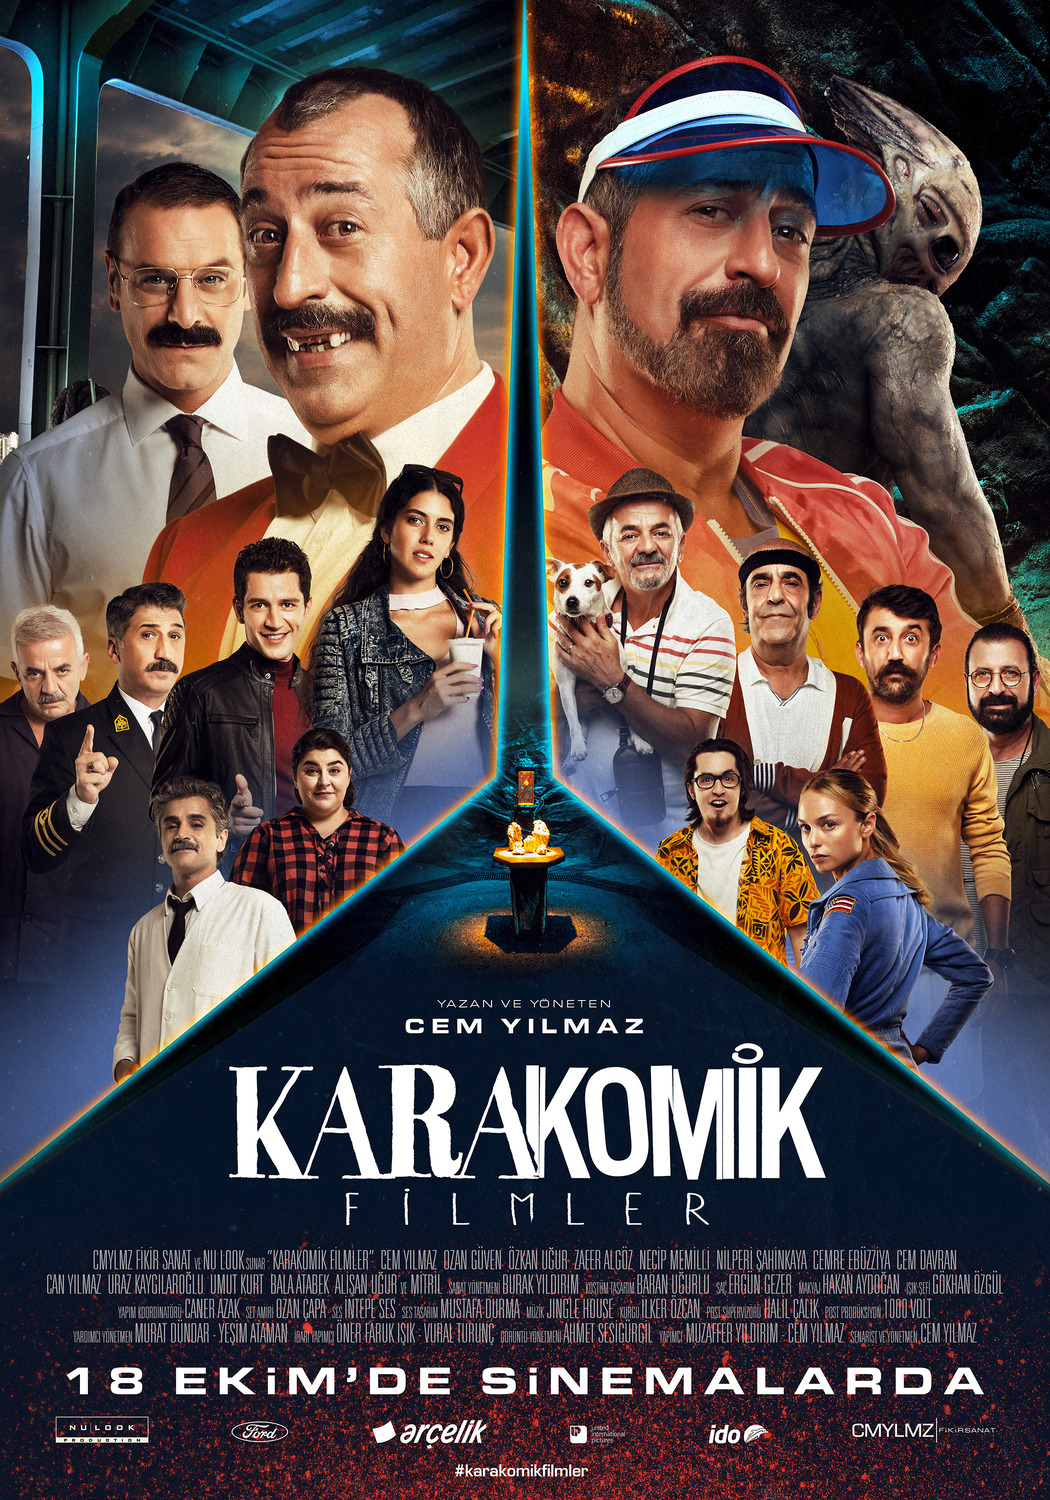 Extra Large Movie Poster Image for Karakomik Filmler (#8 of 9)